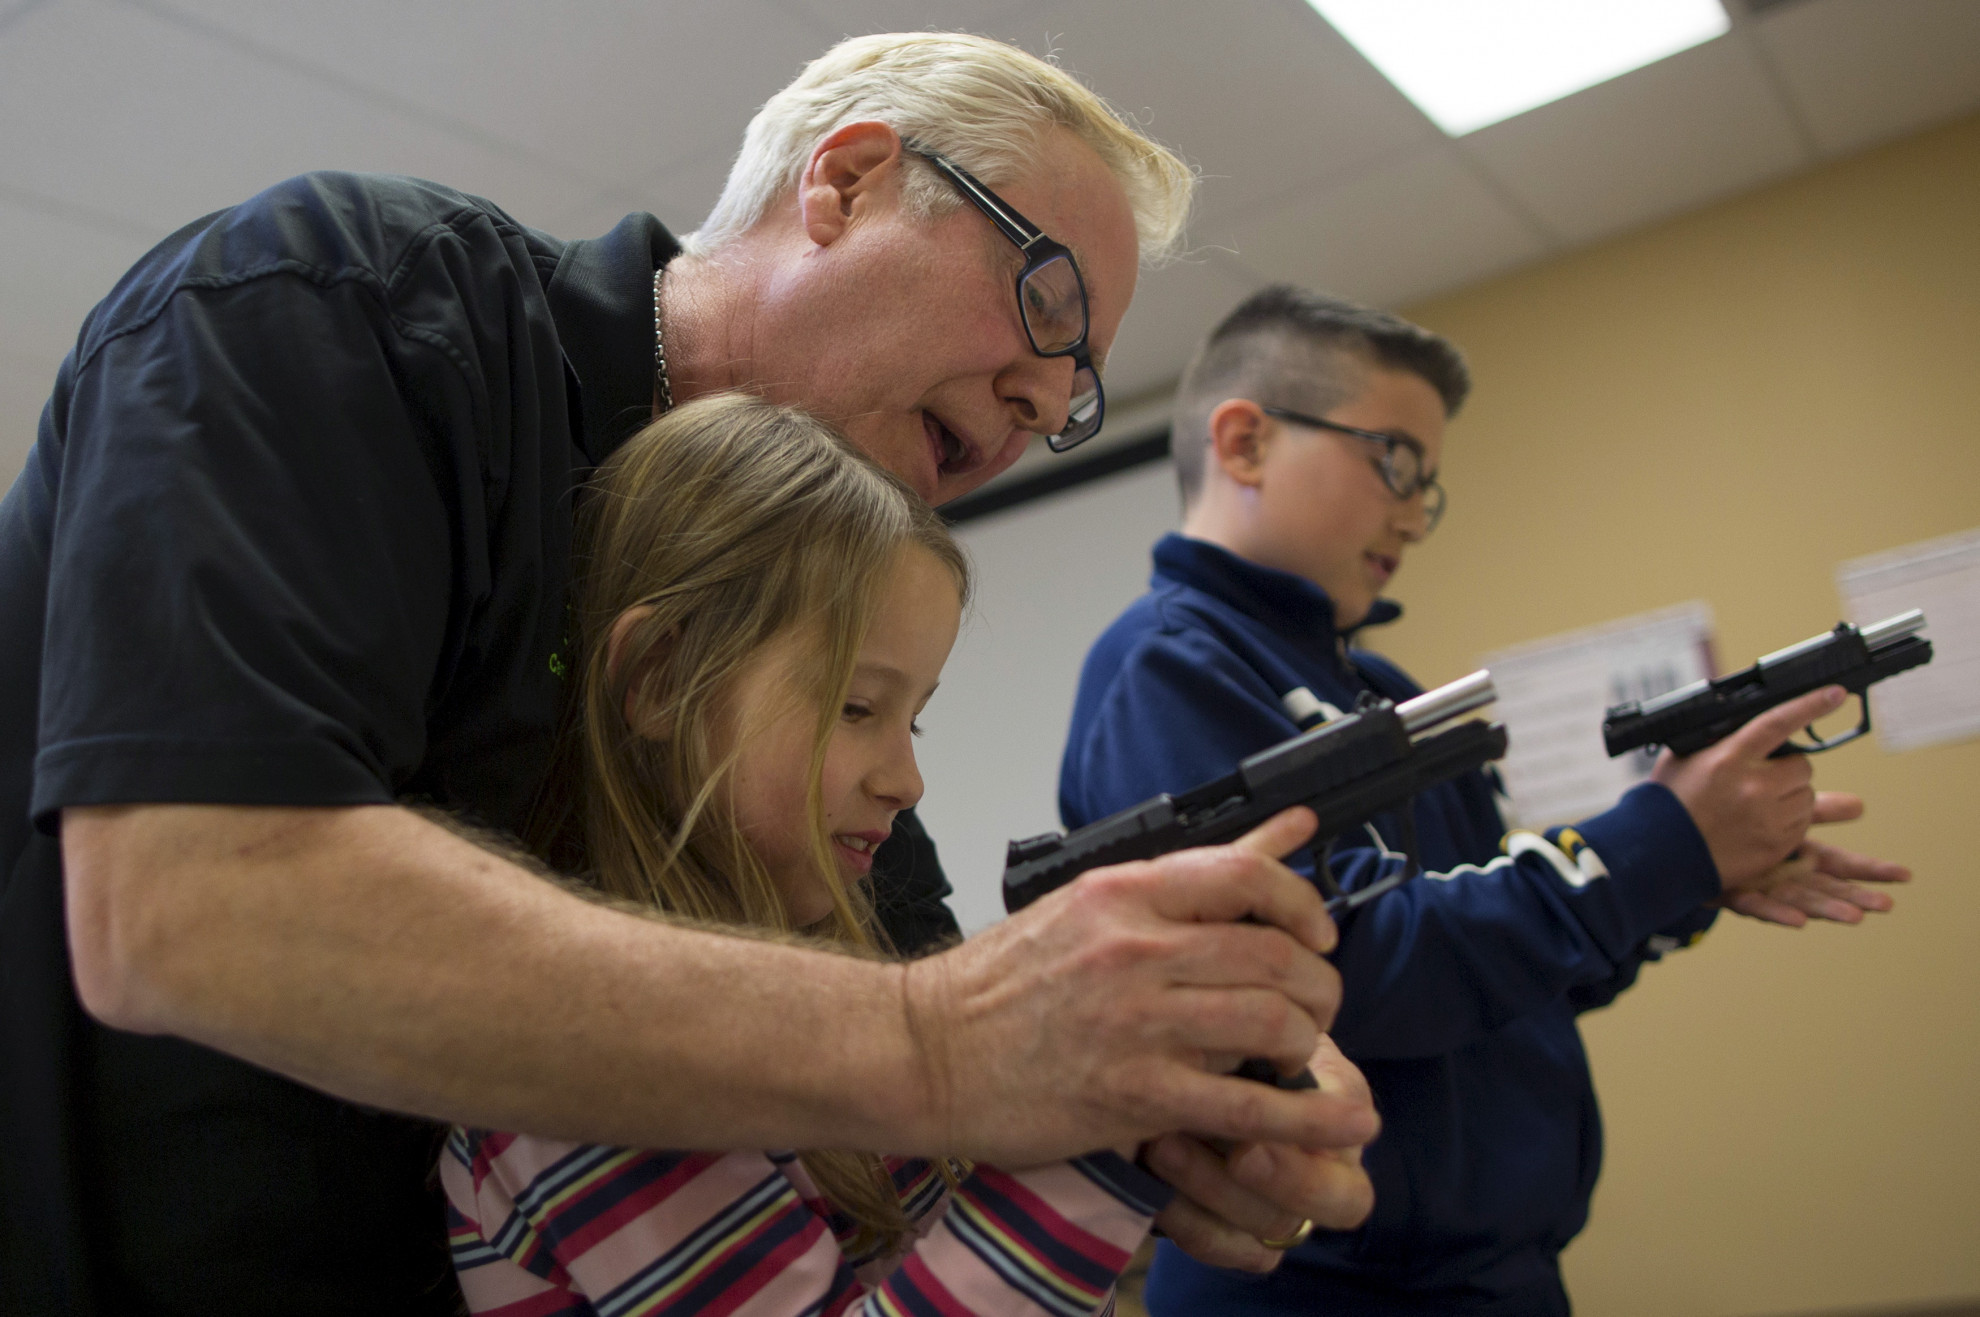 In Missouri anche i bambini possono portare un'arma da fuoco - Ticinonline